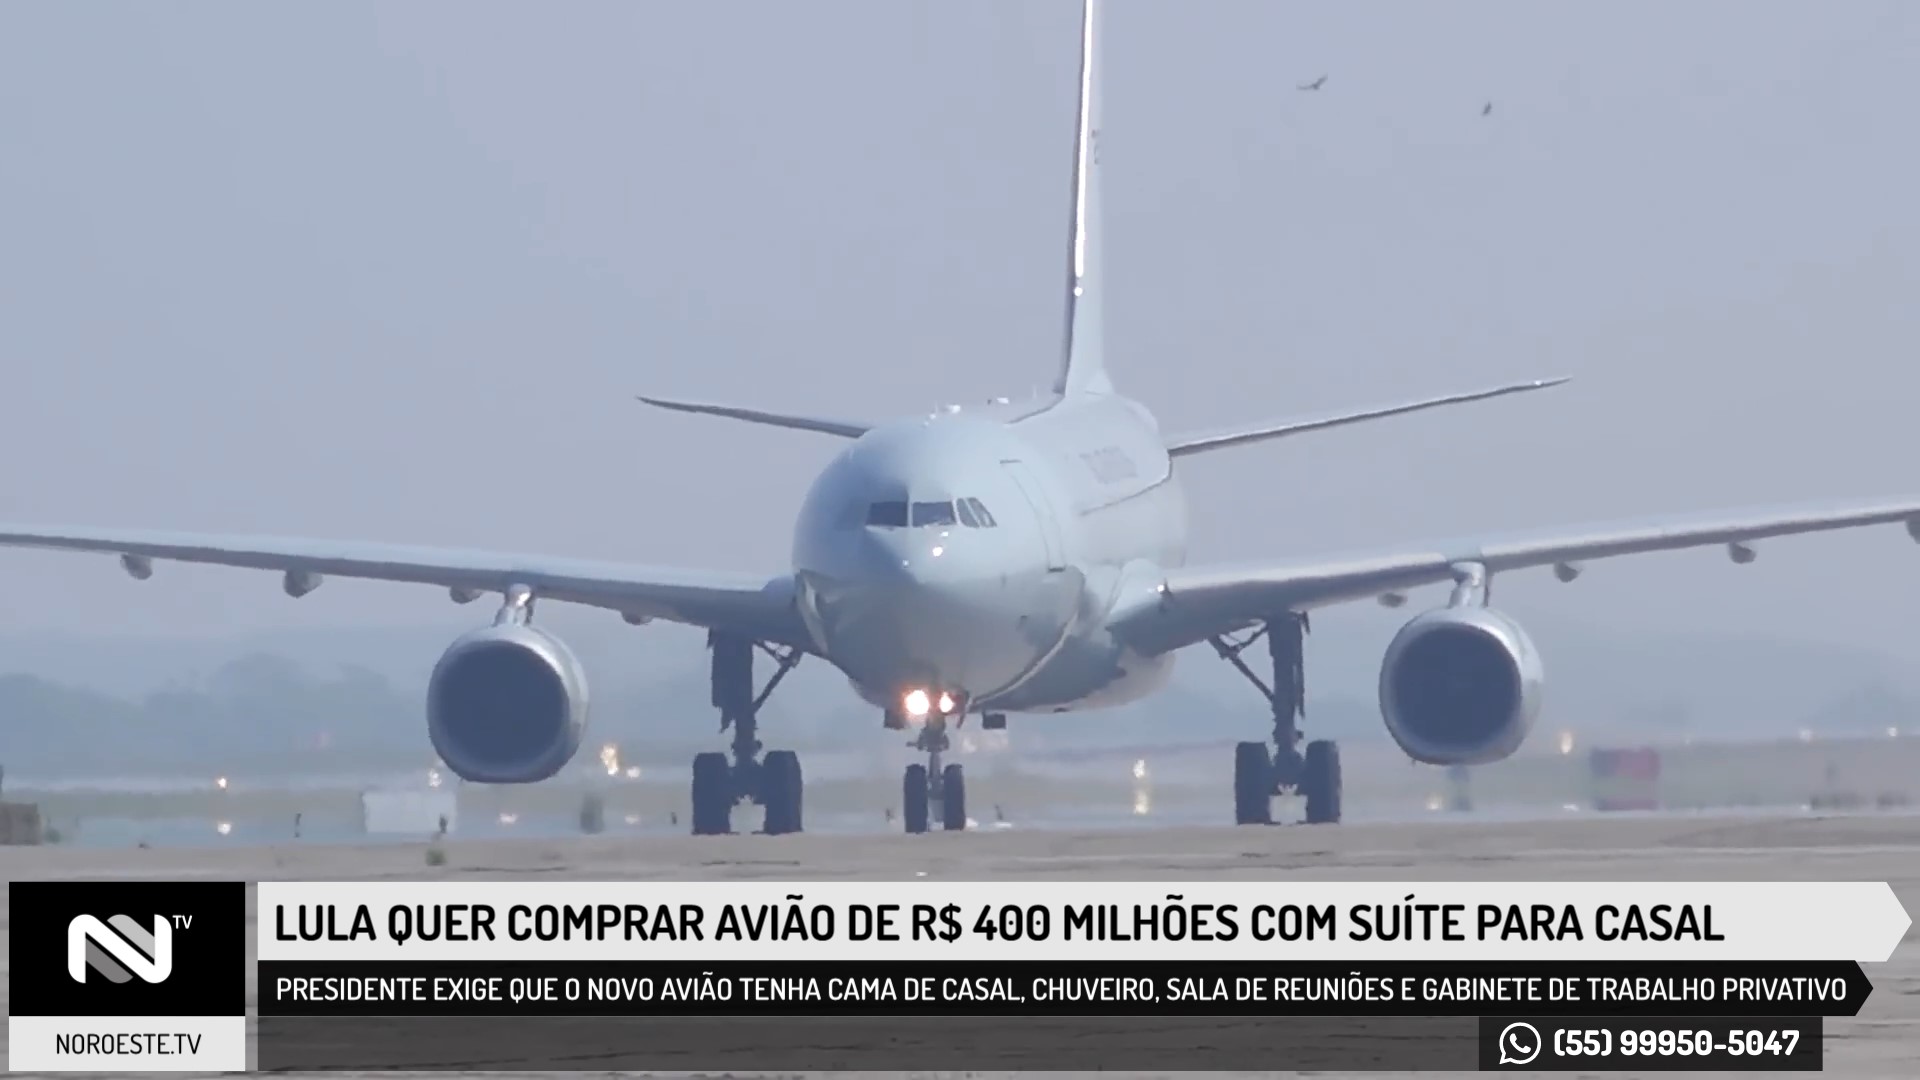 Lula quer comprar avião de R$ 400 milhões com suíte para casal